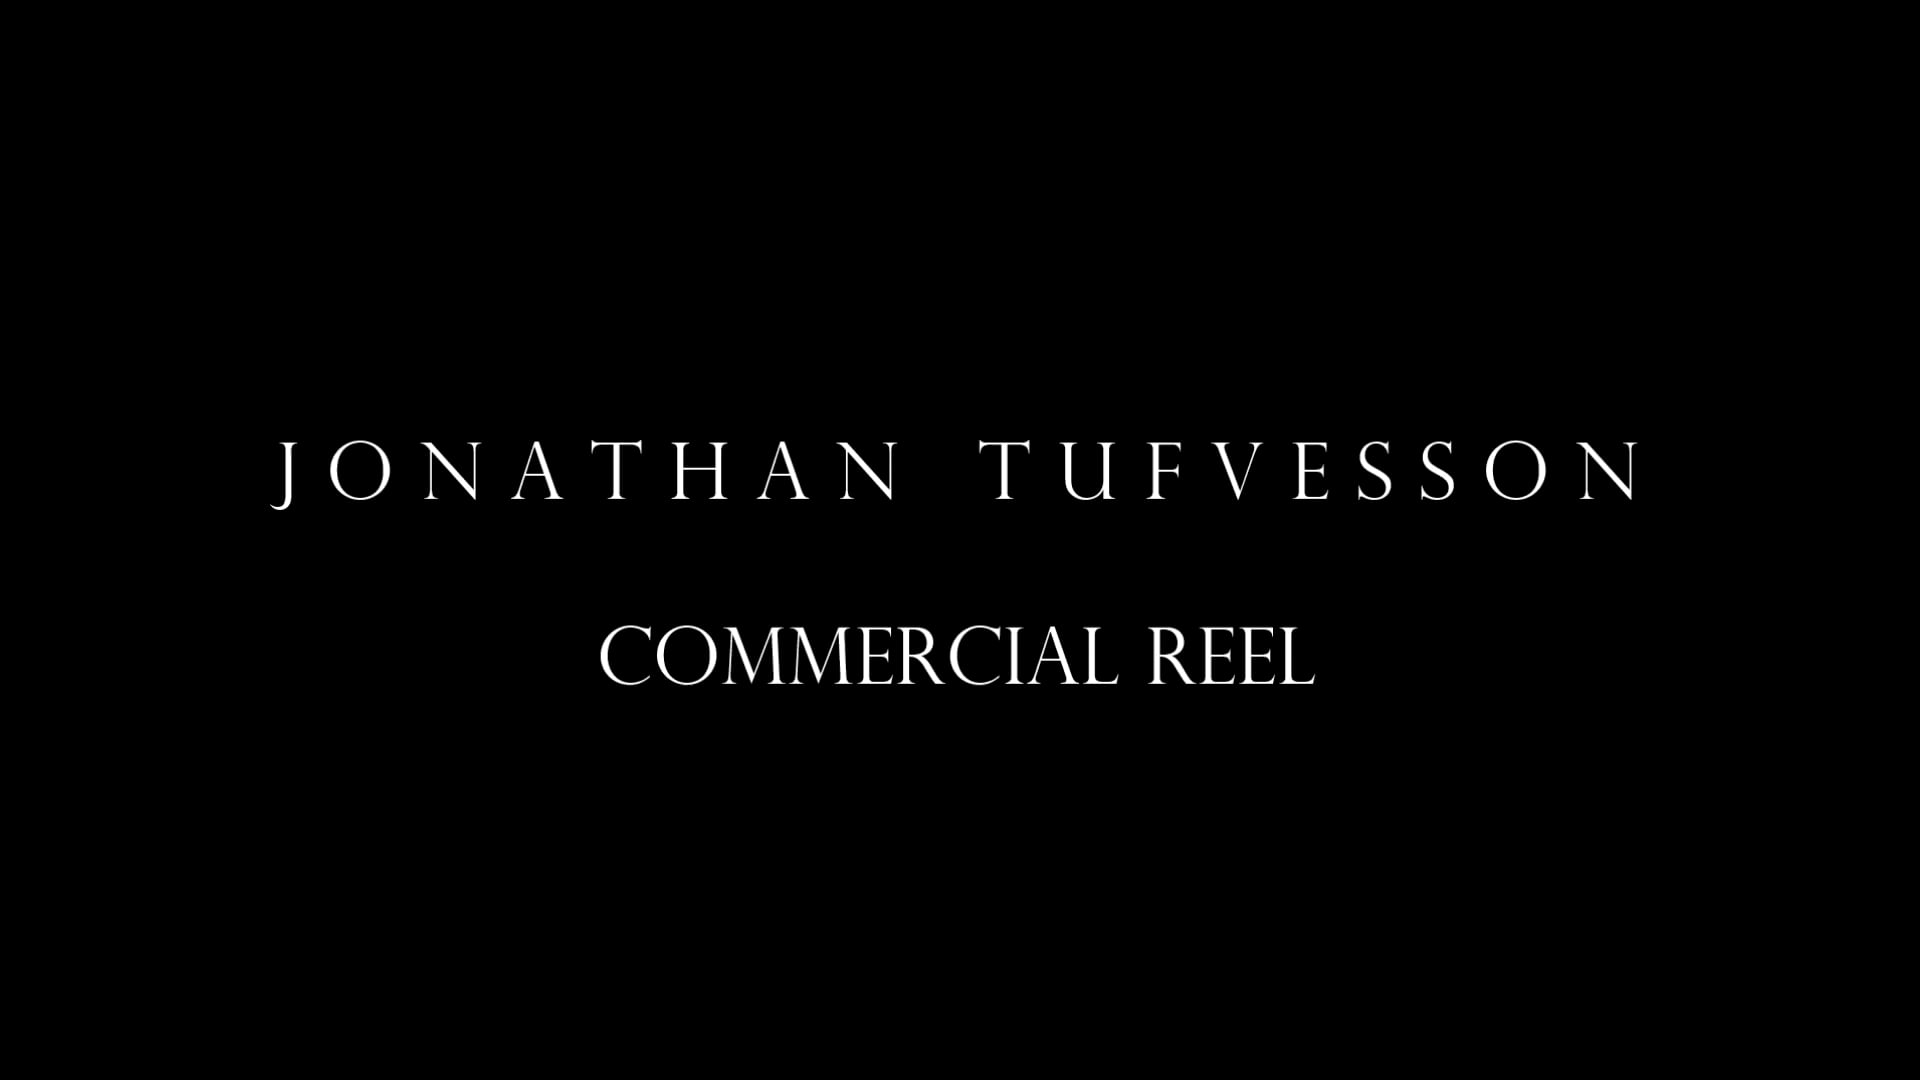 Commercial Reel | Jonathan Tufvesson